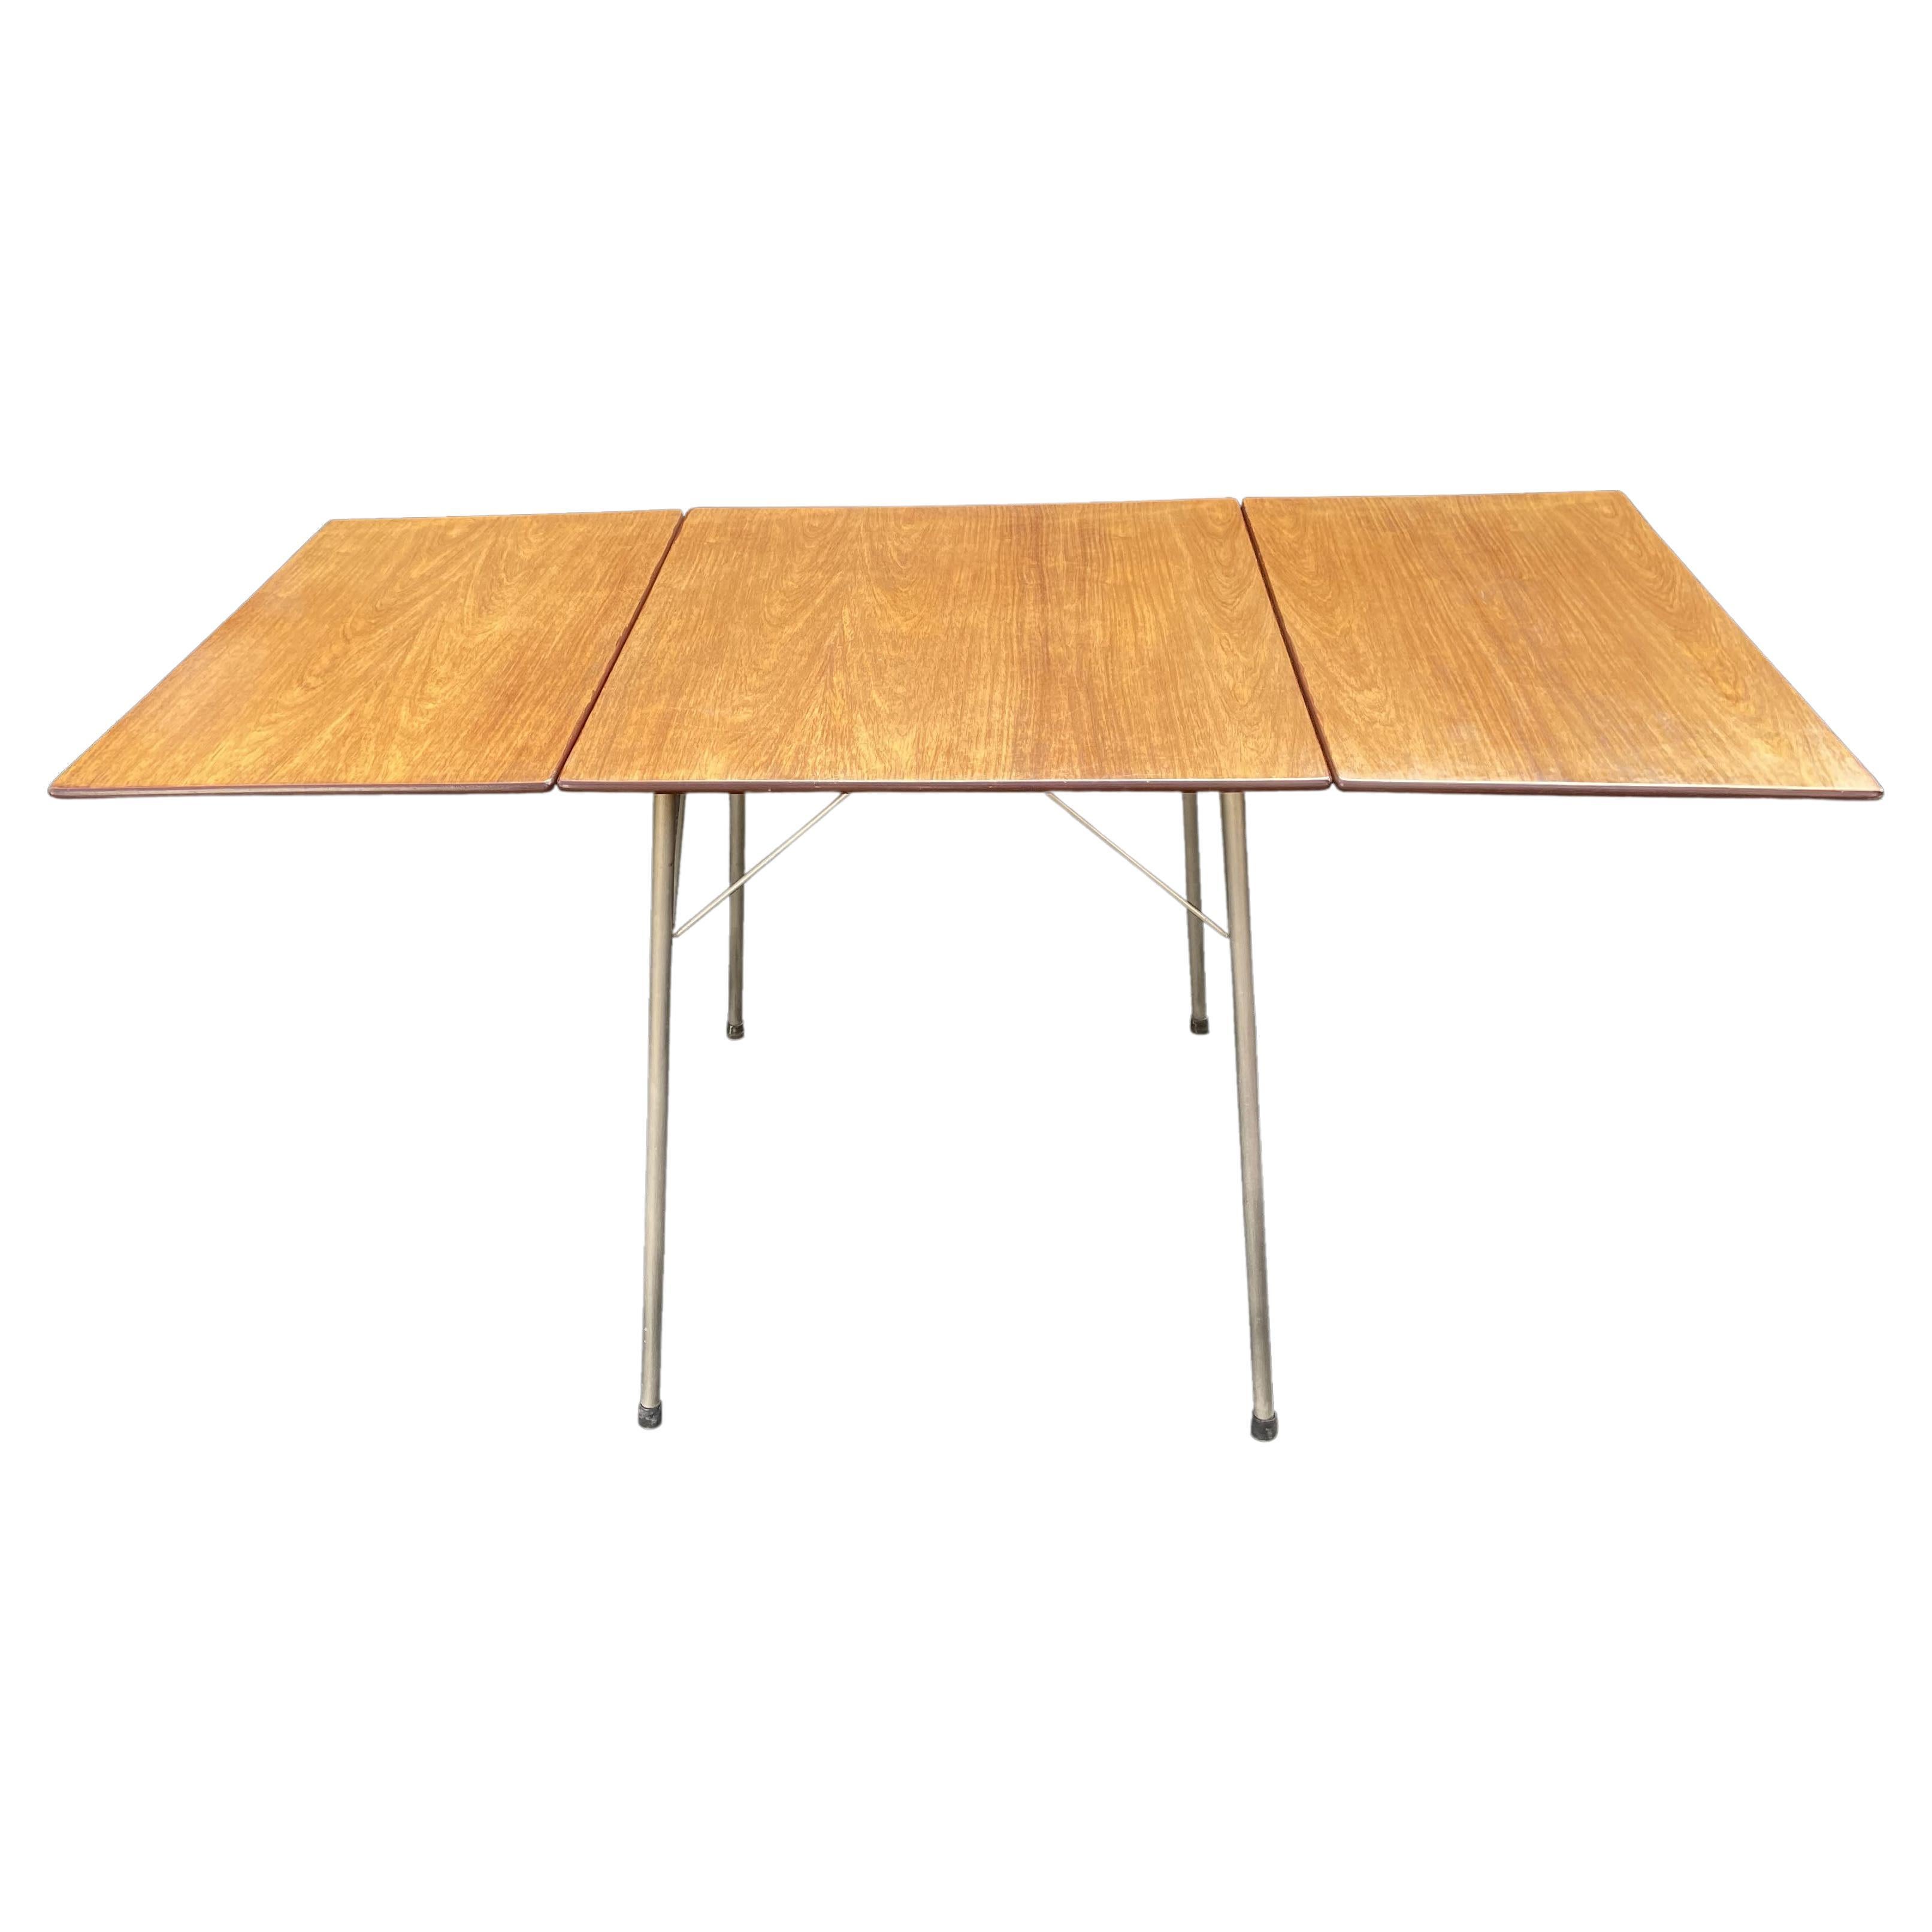 'Ant' Table Model 3601 by Arne Jacobsen for Fritz Hansen